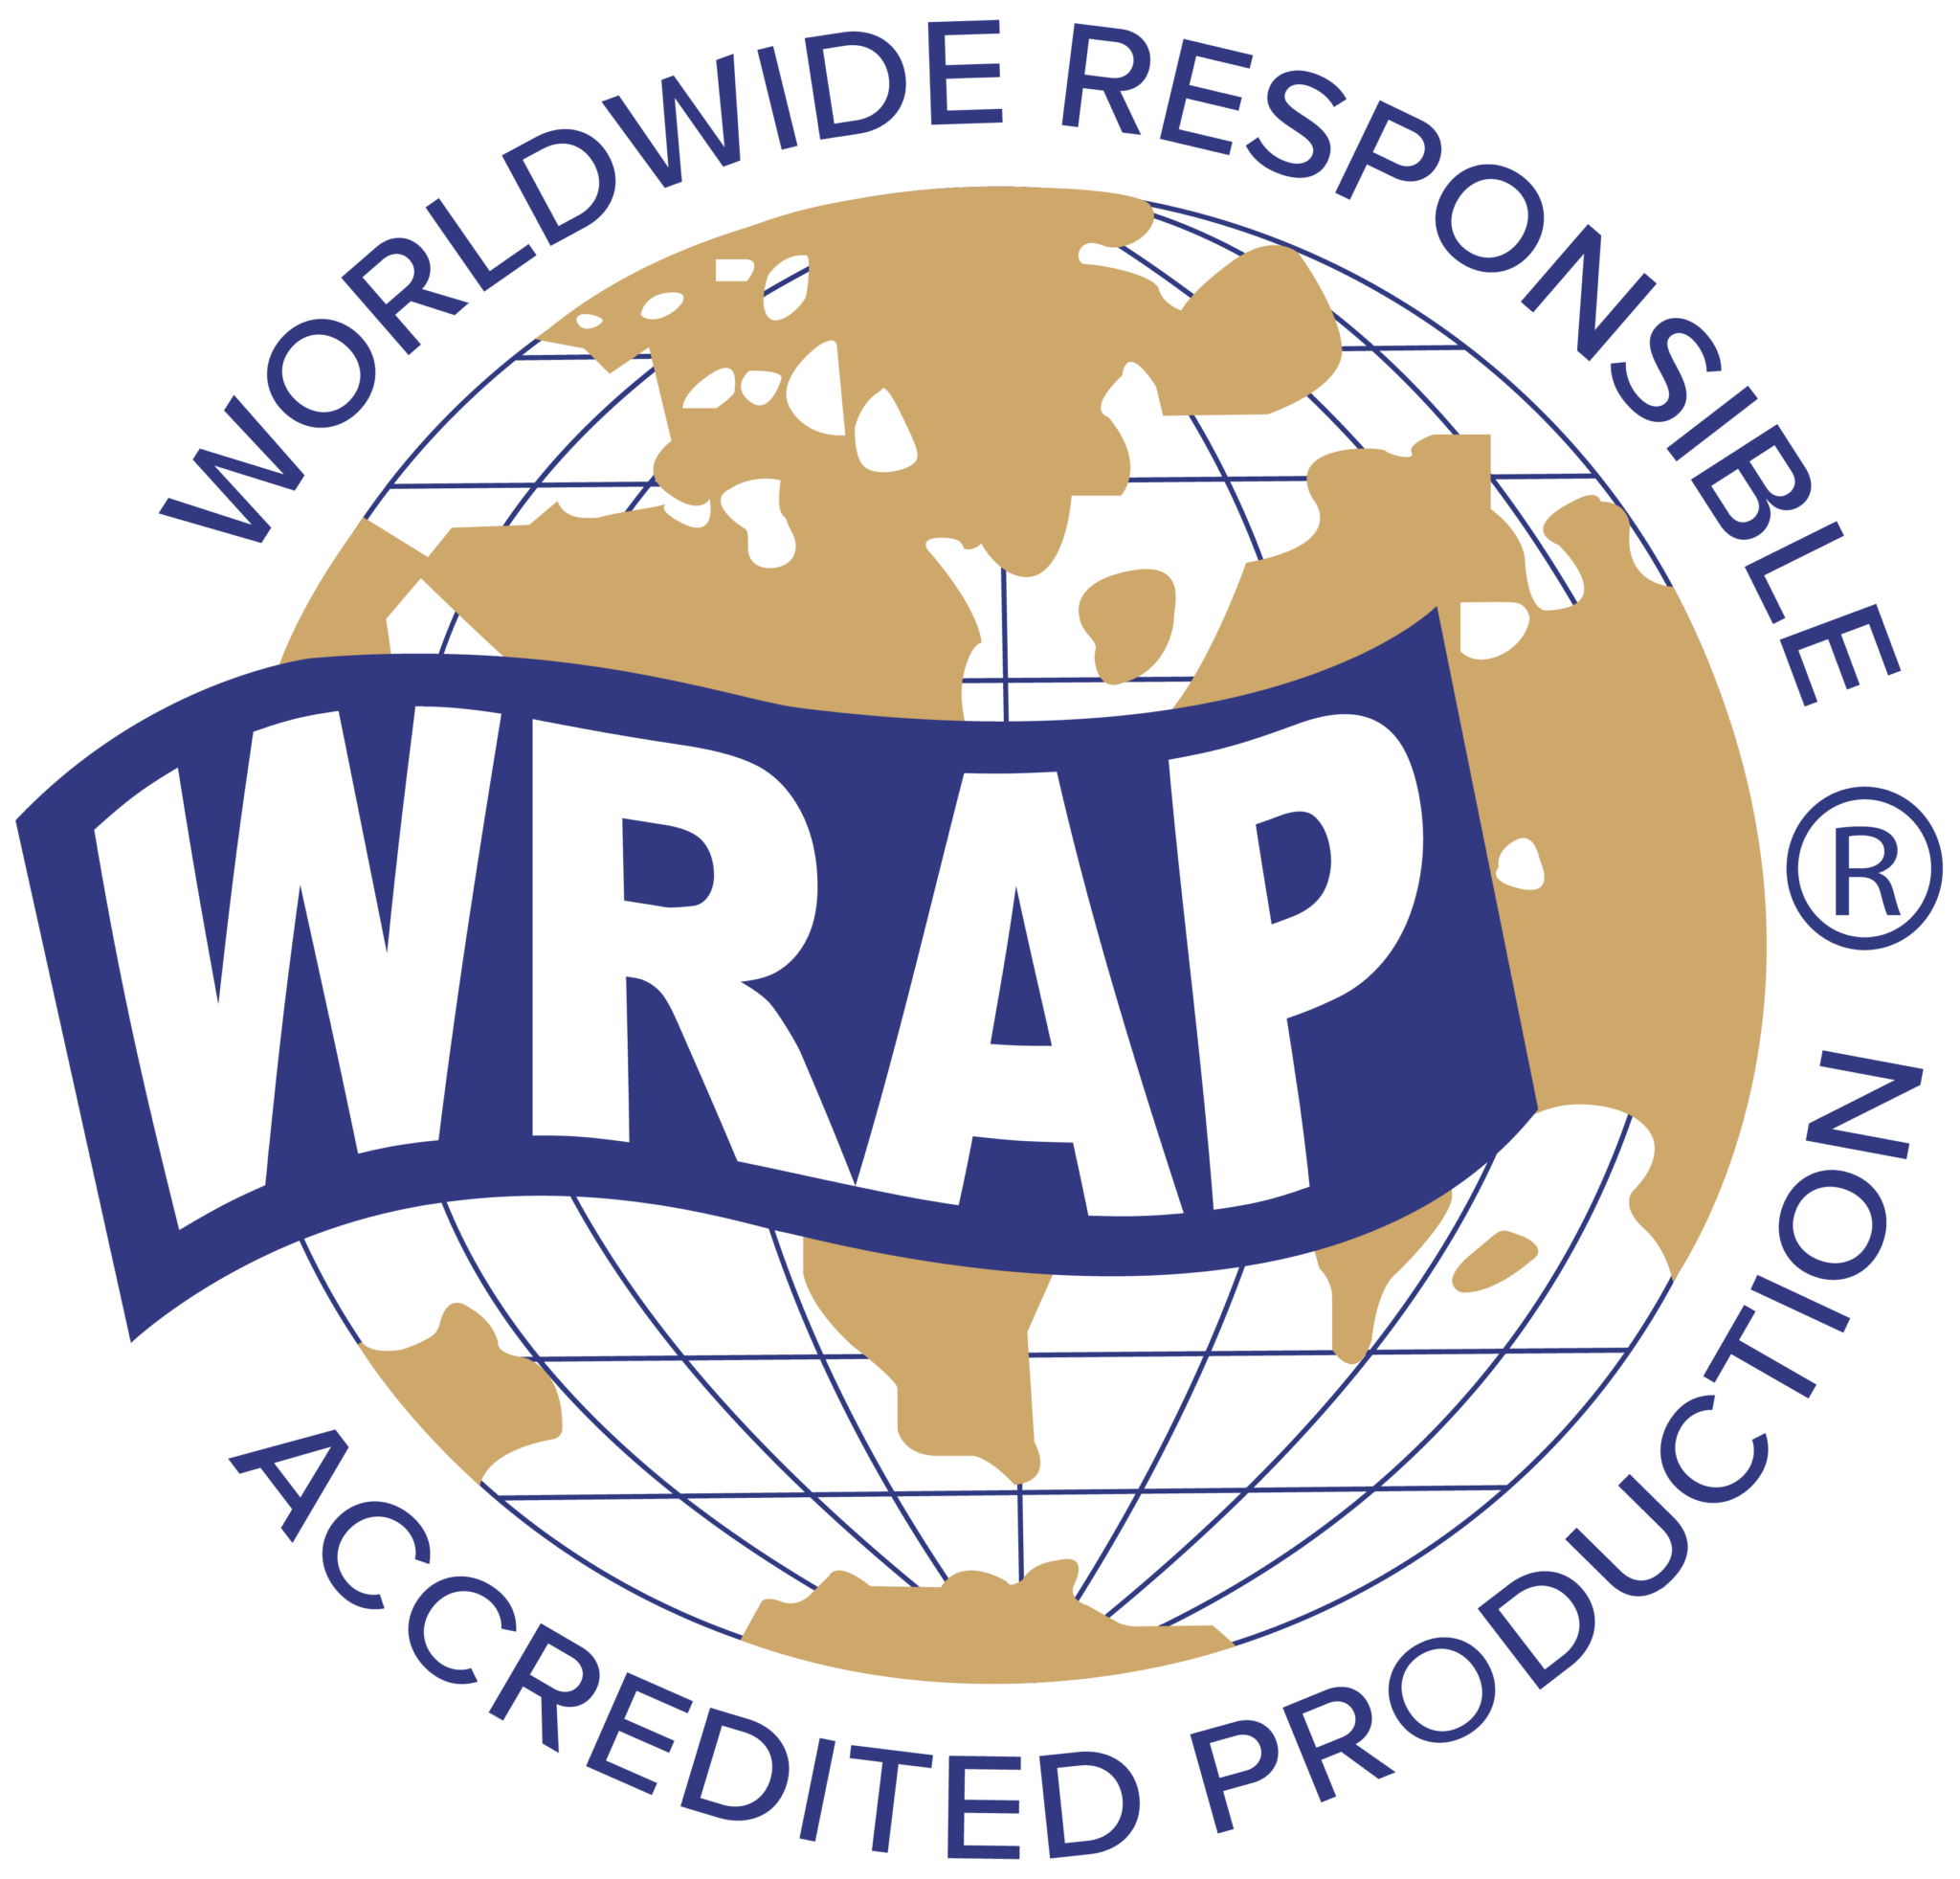 WRAP Certified